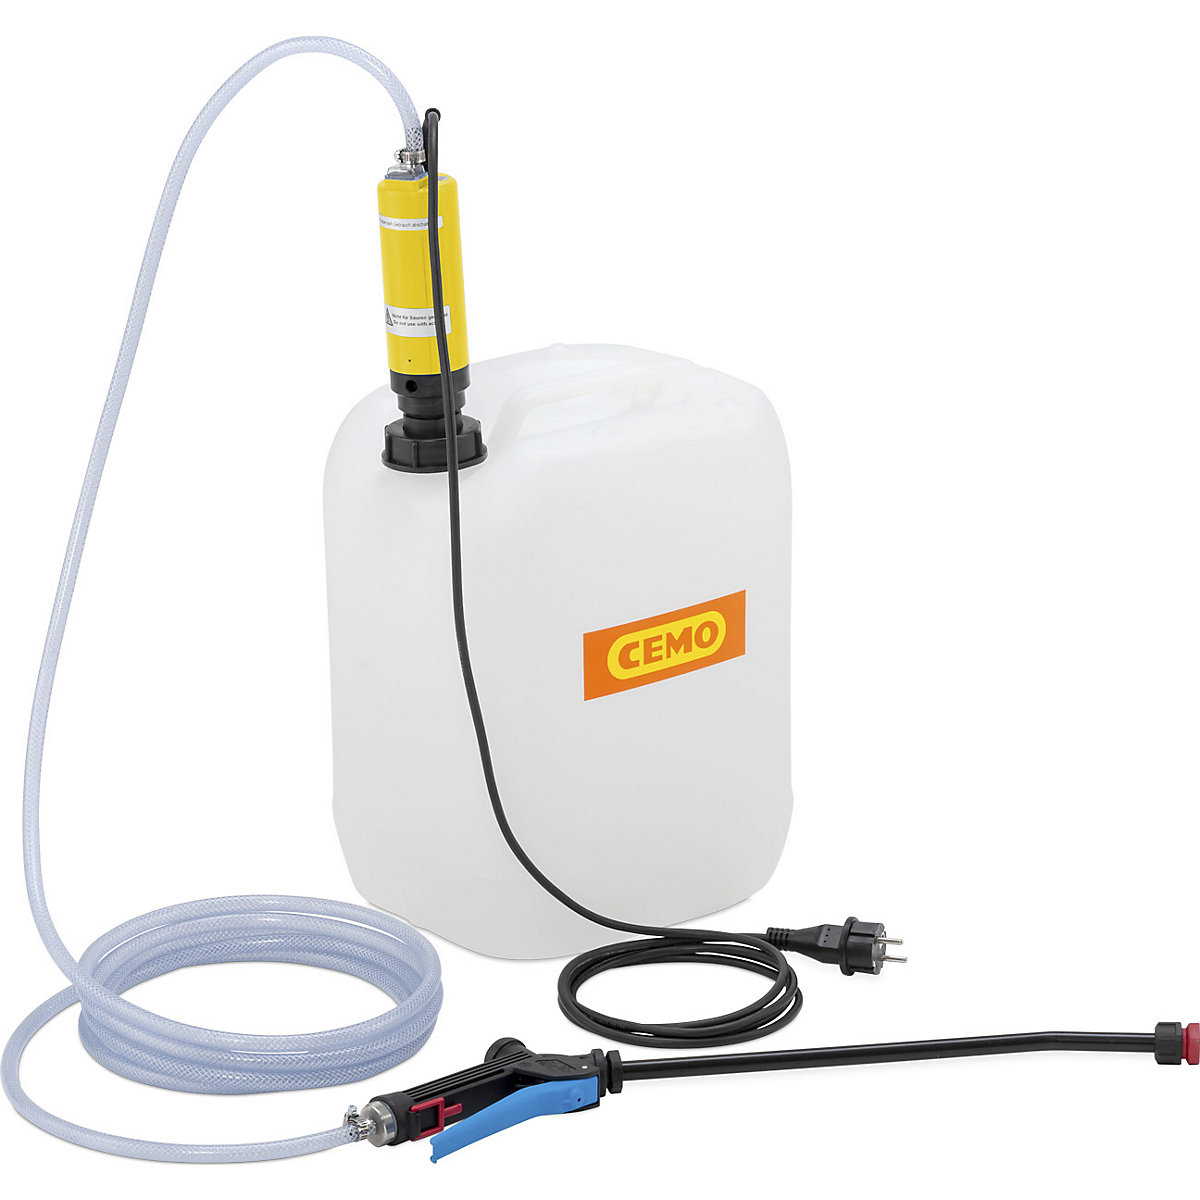 Canistră cu dispozitiv electric de pulverizare pentru soluții dezinfectante – CEMO